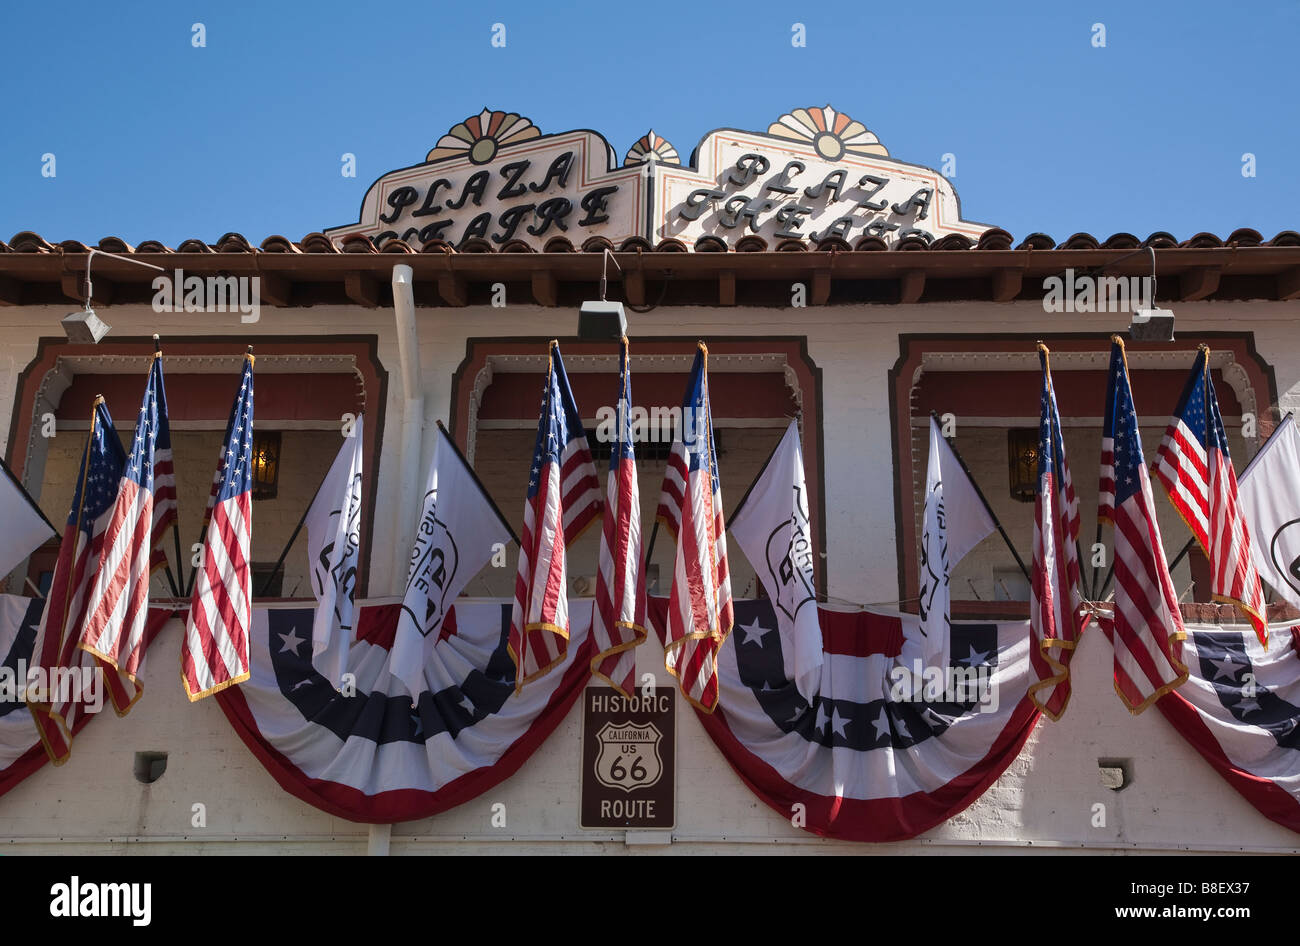 Das alte hing Plaza Theater Palm Springs Kalifornien mit amerikanischen Flaggen Wimpel auf dem Balkon. Stockfoto